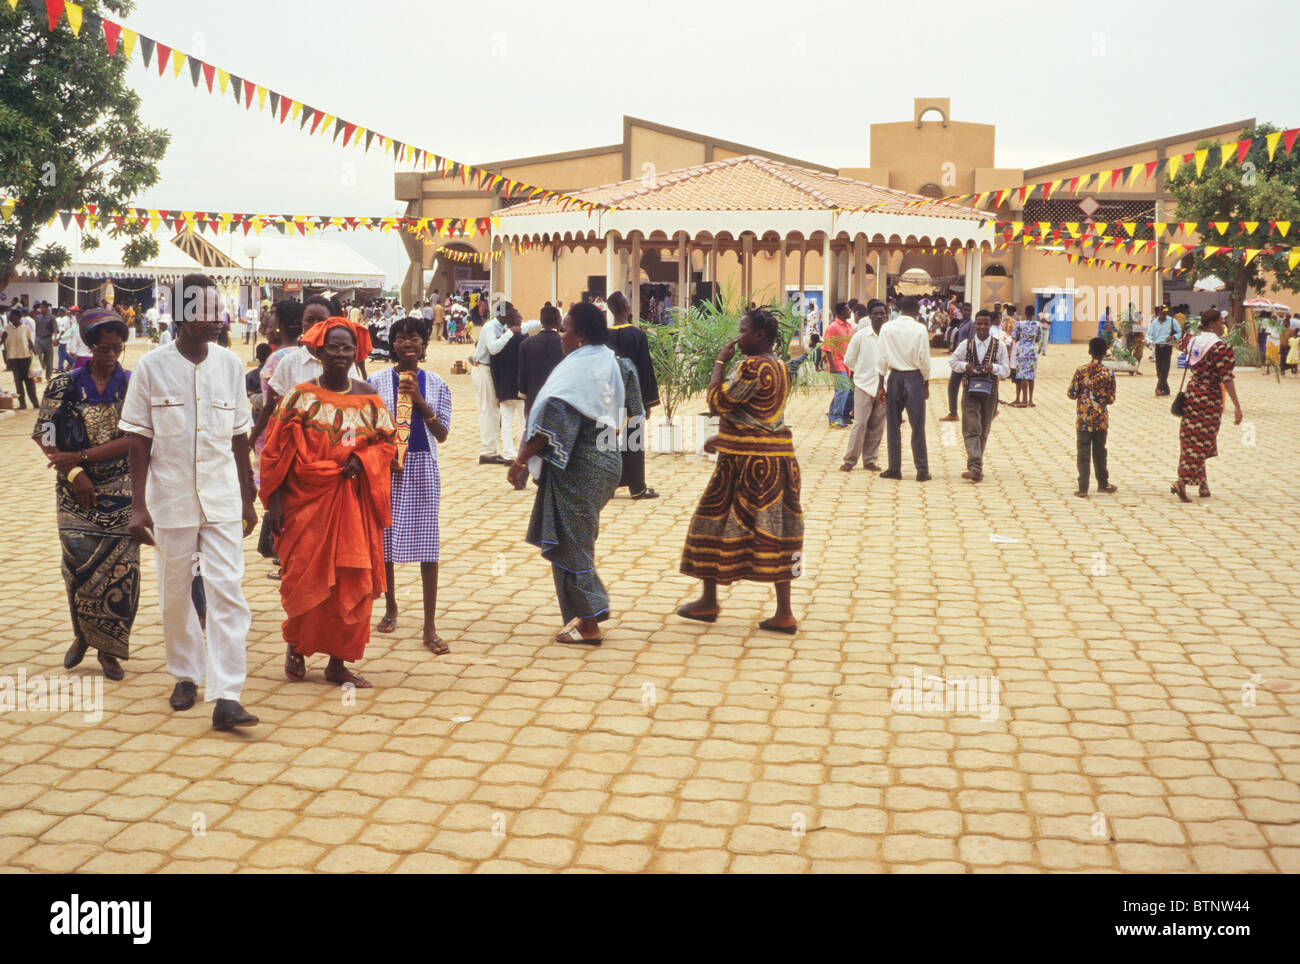 Ouagadougou, Burkina Faso. SIAO (Salon International de l'Artisanat de Ouagadougou) Plaza. Stock Photo